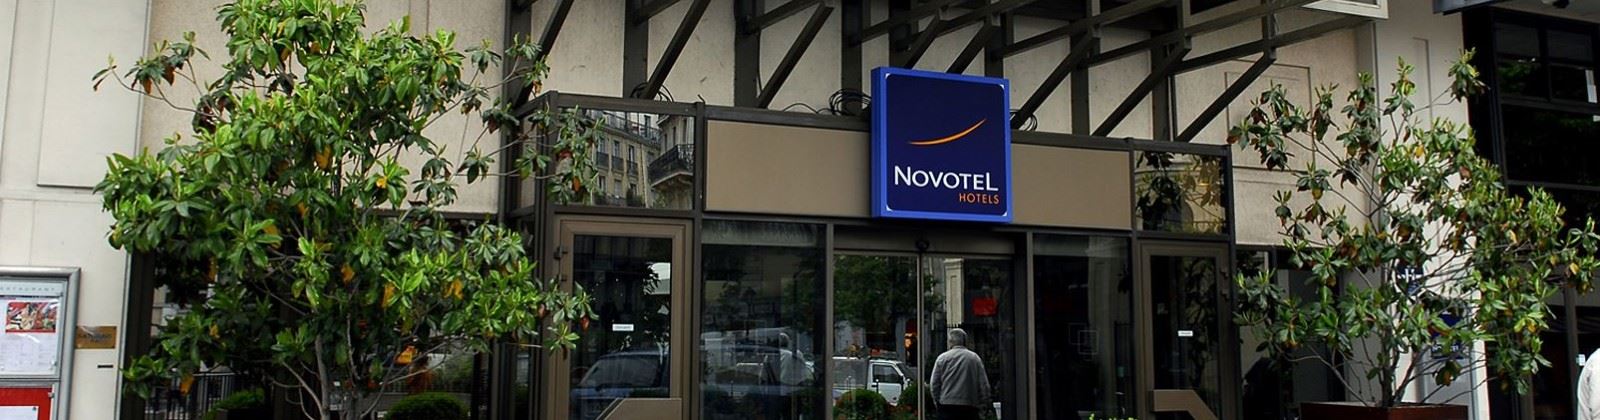 novotel paris les halles olevene hotel restaurant booking congres 